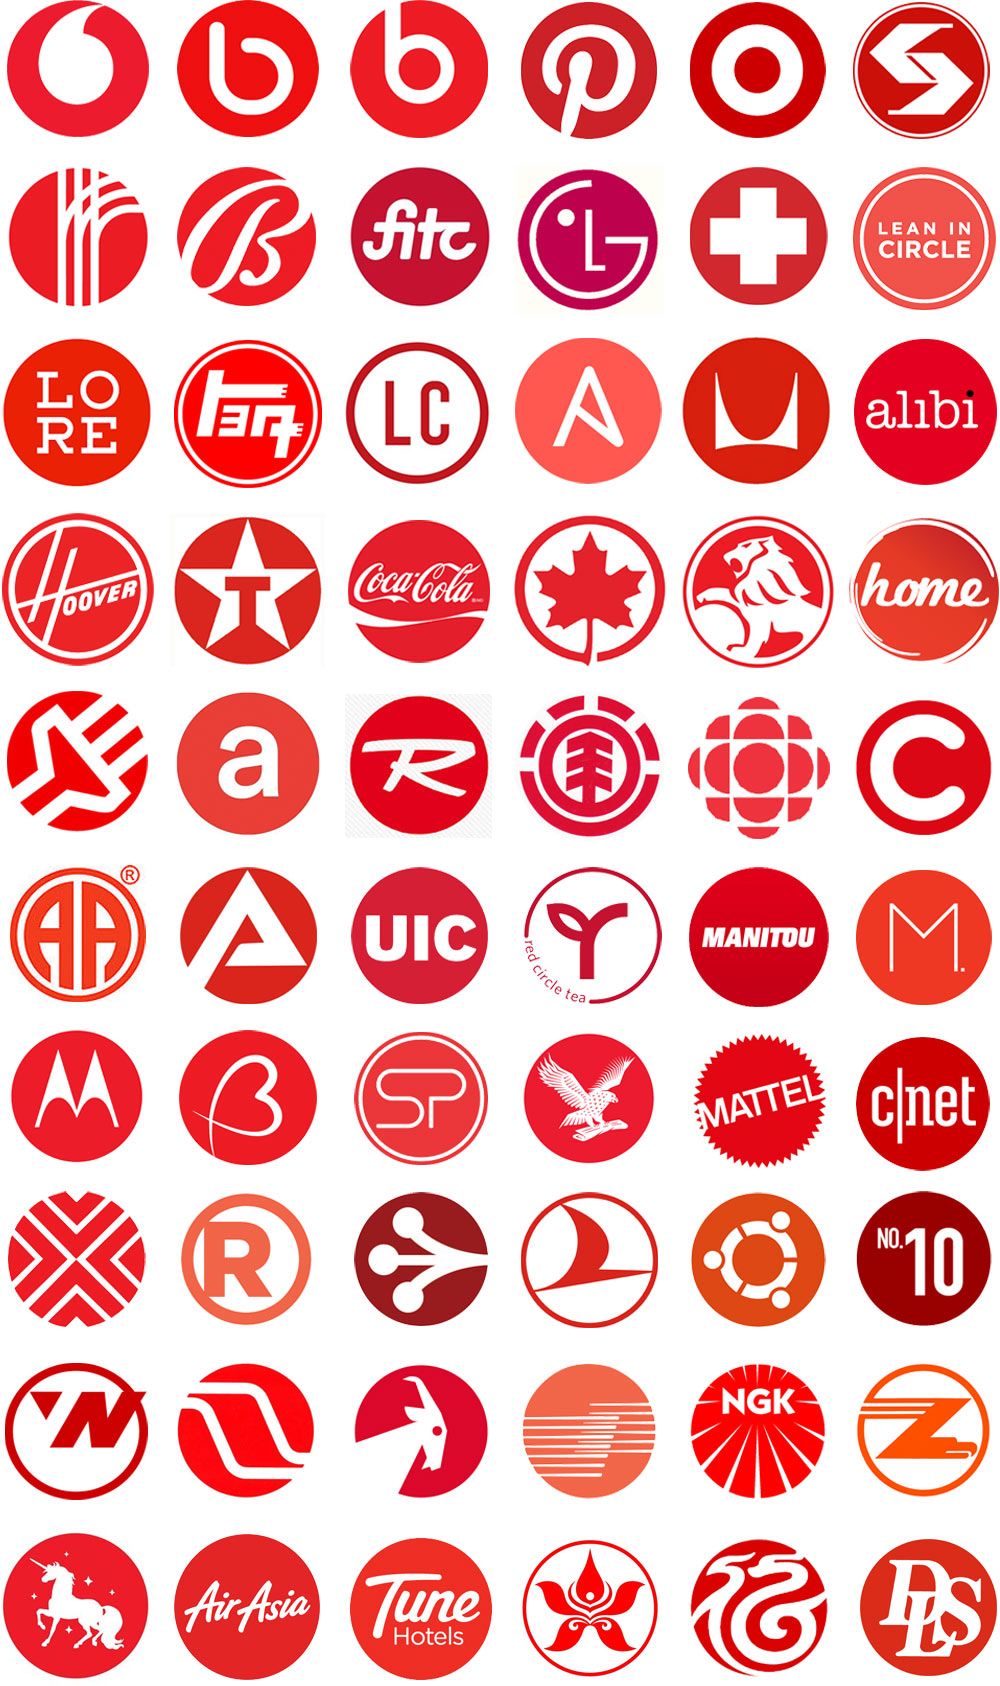 Red circle logos